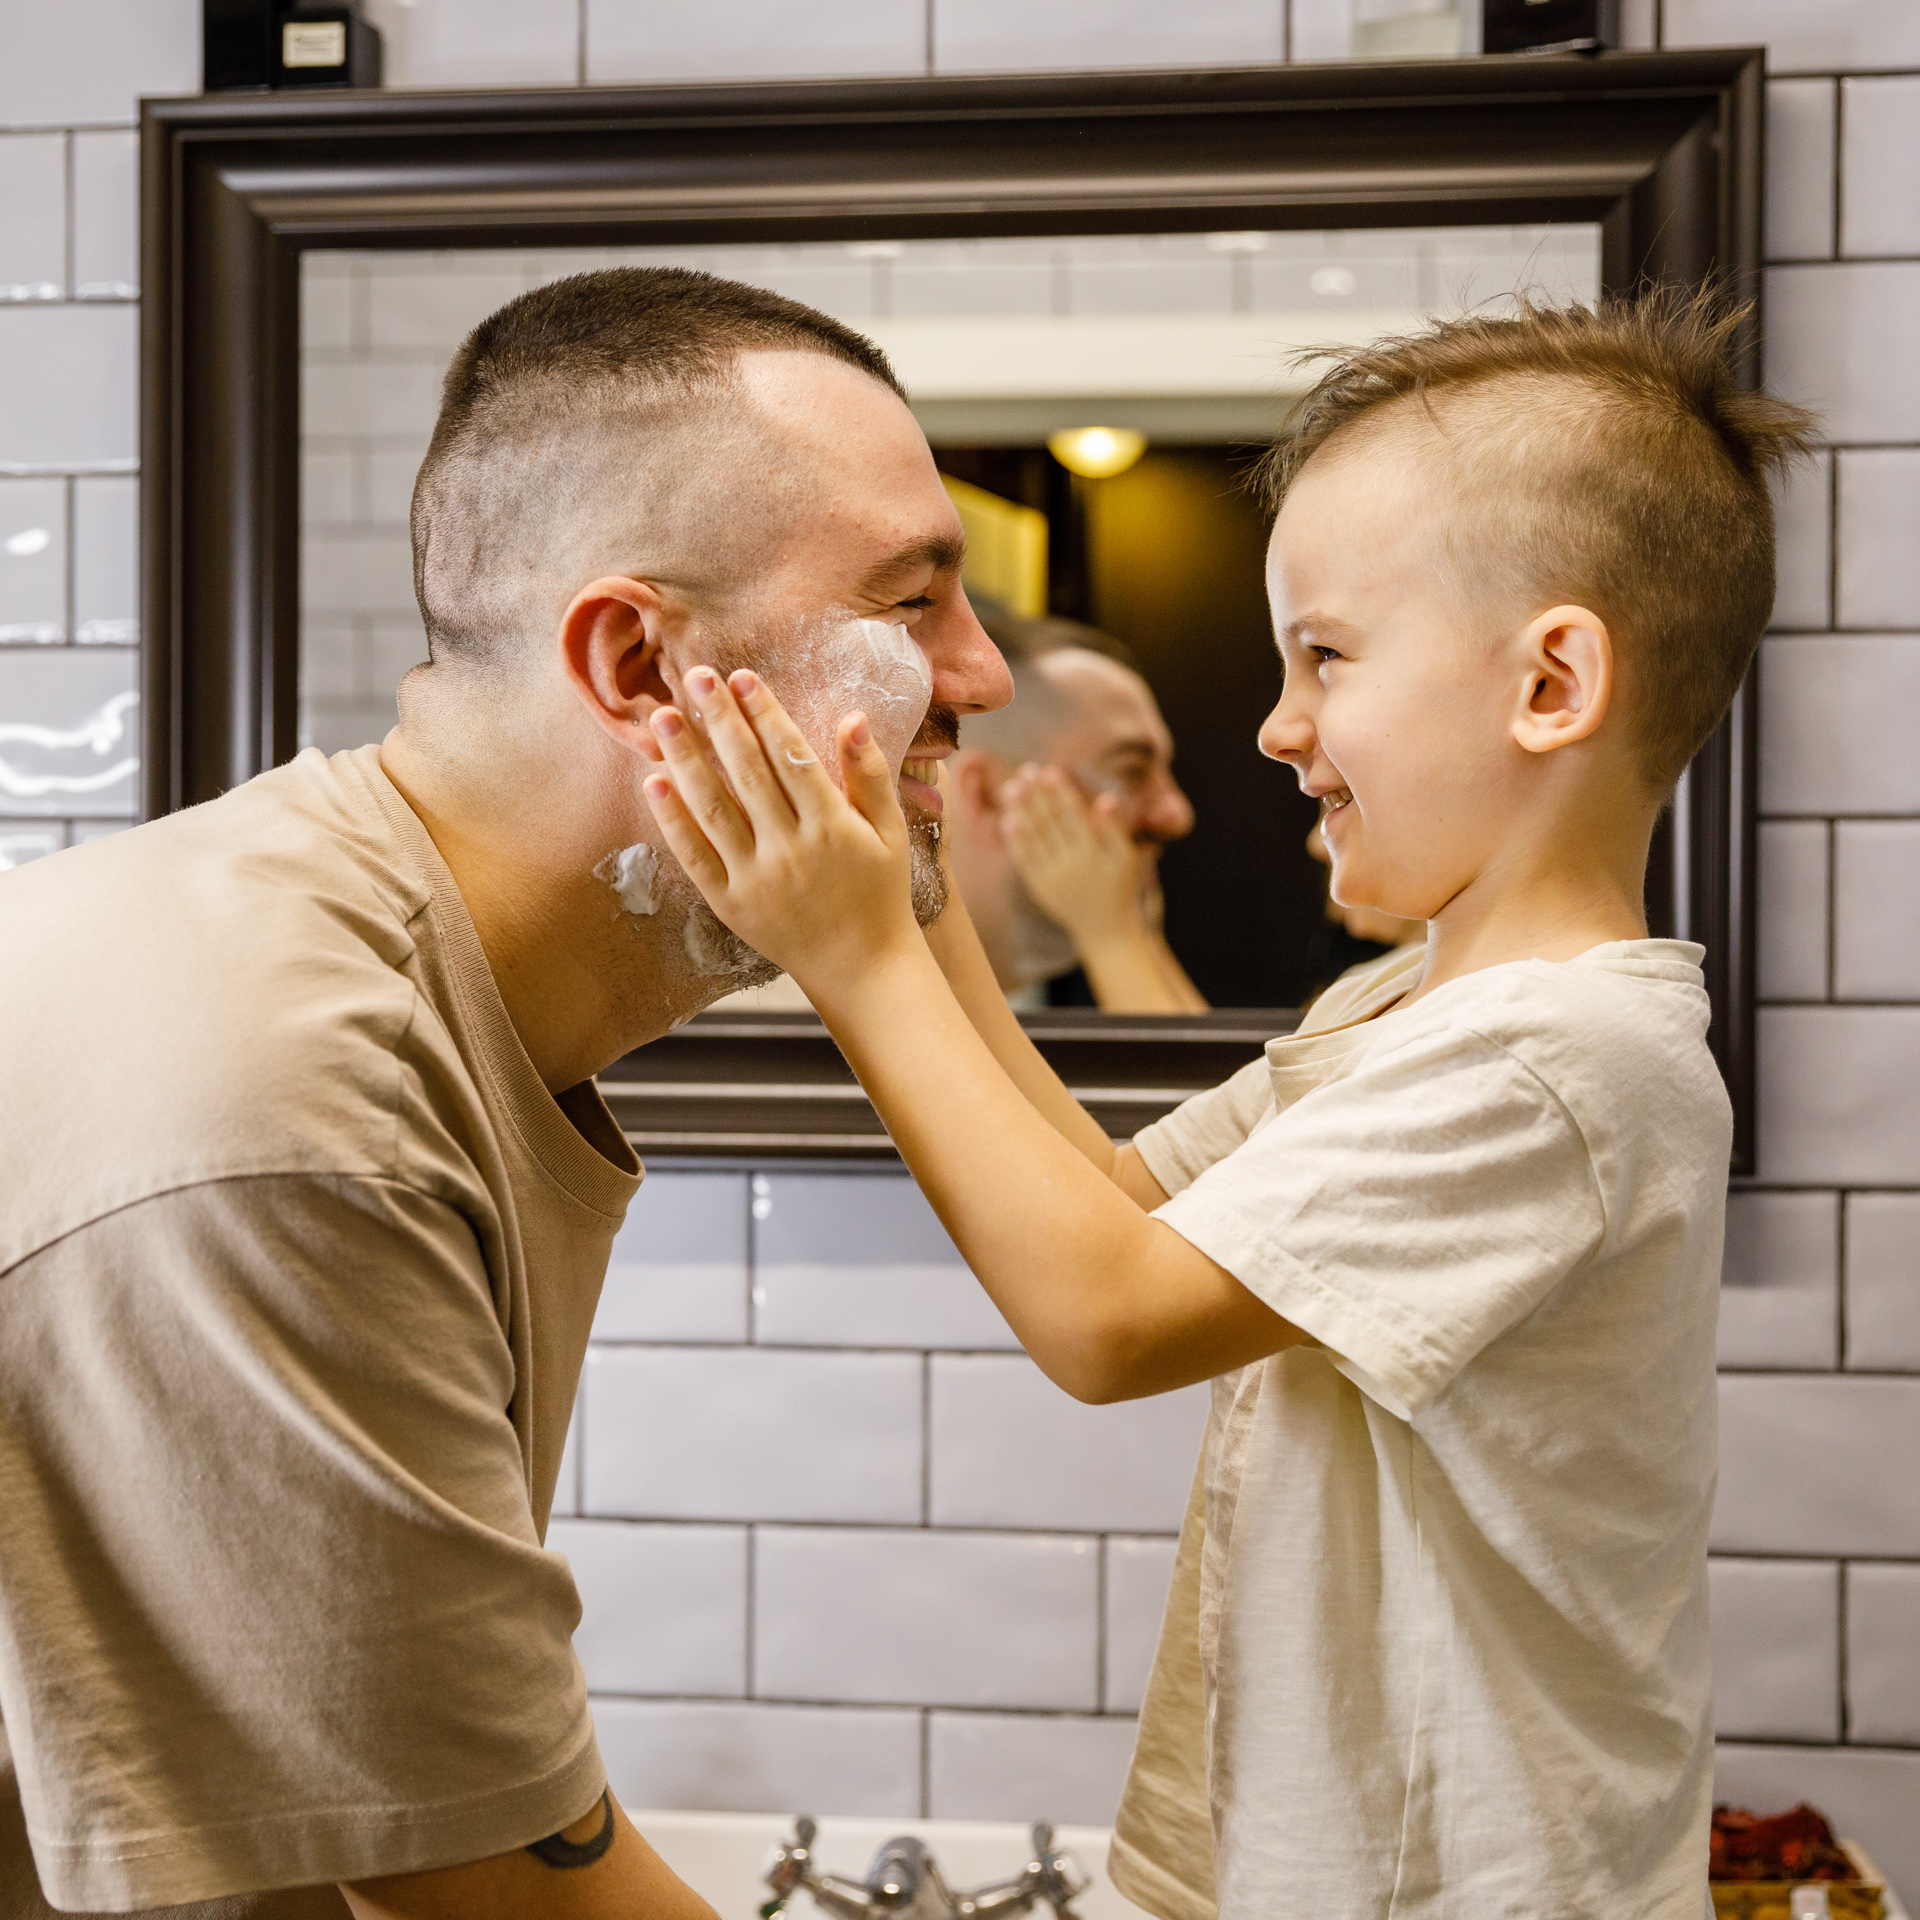 Tėtis su septynmečiu vonioje, sūnus tepa tėčio veidą skutimosi putomis